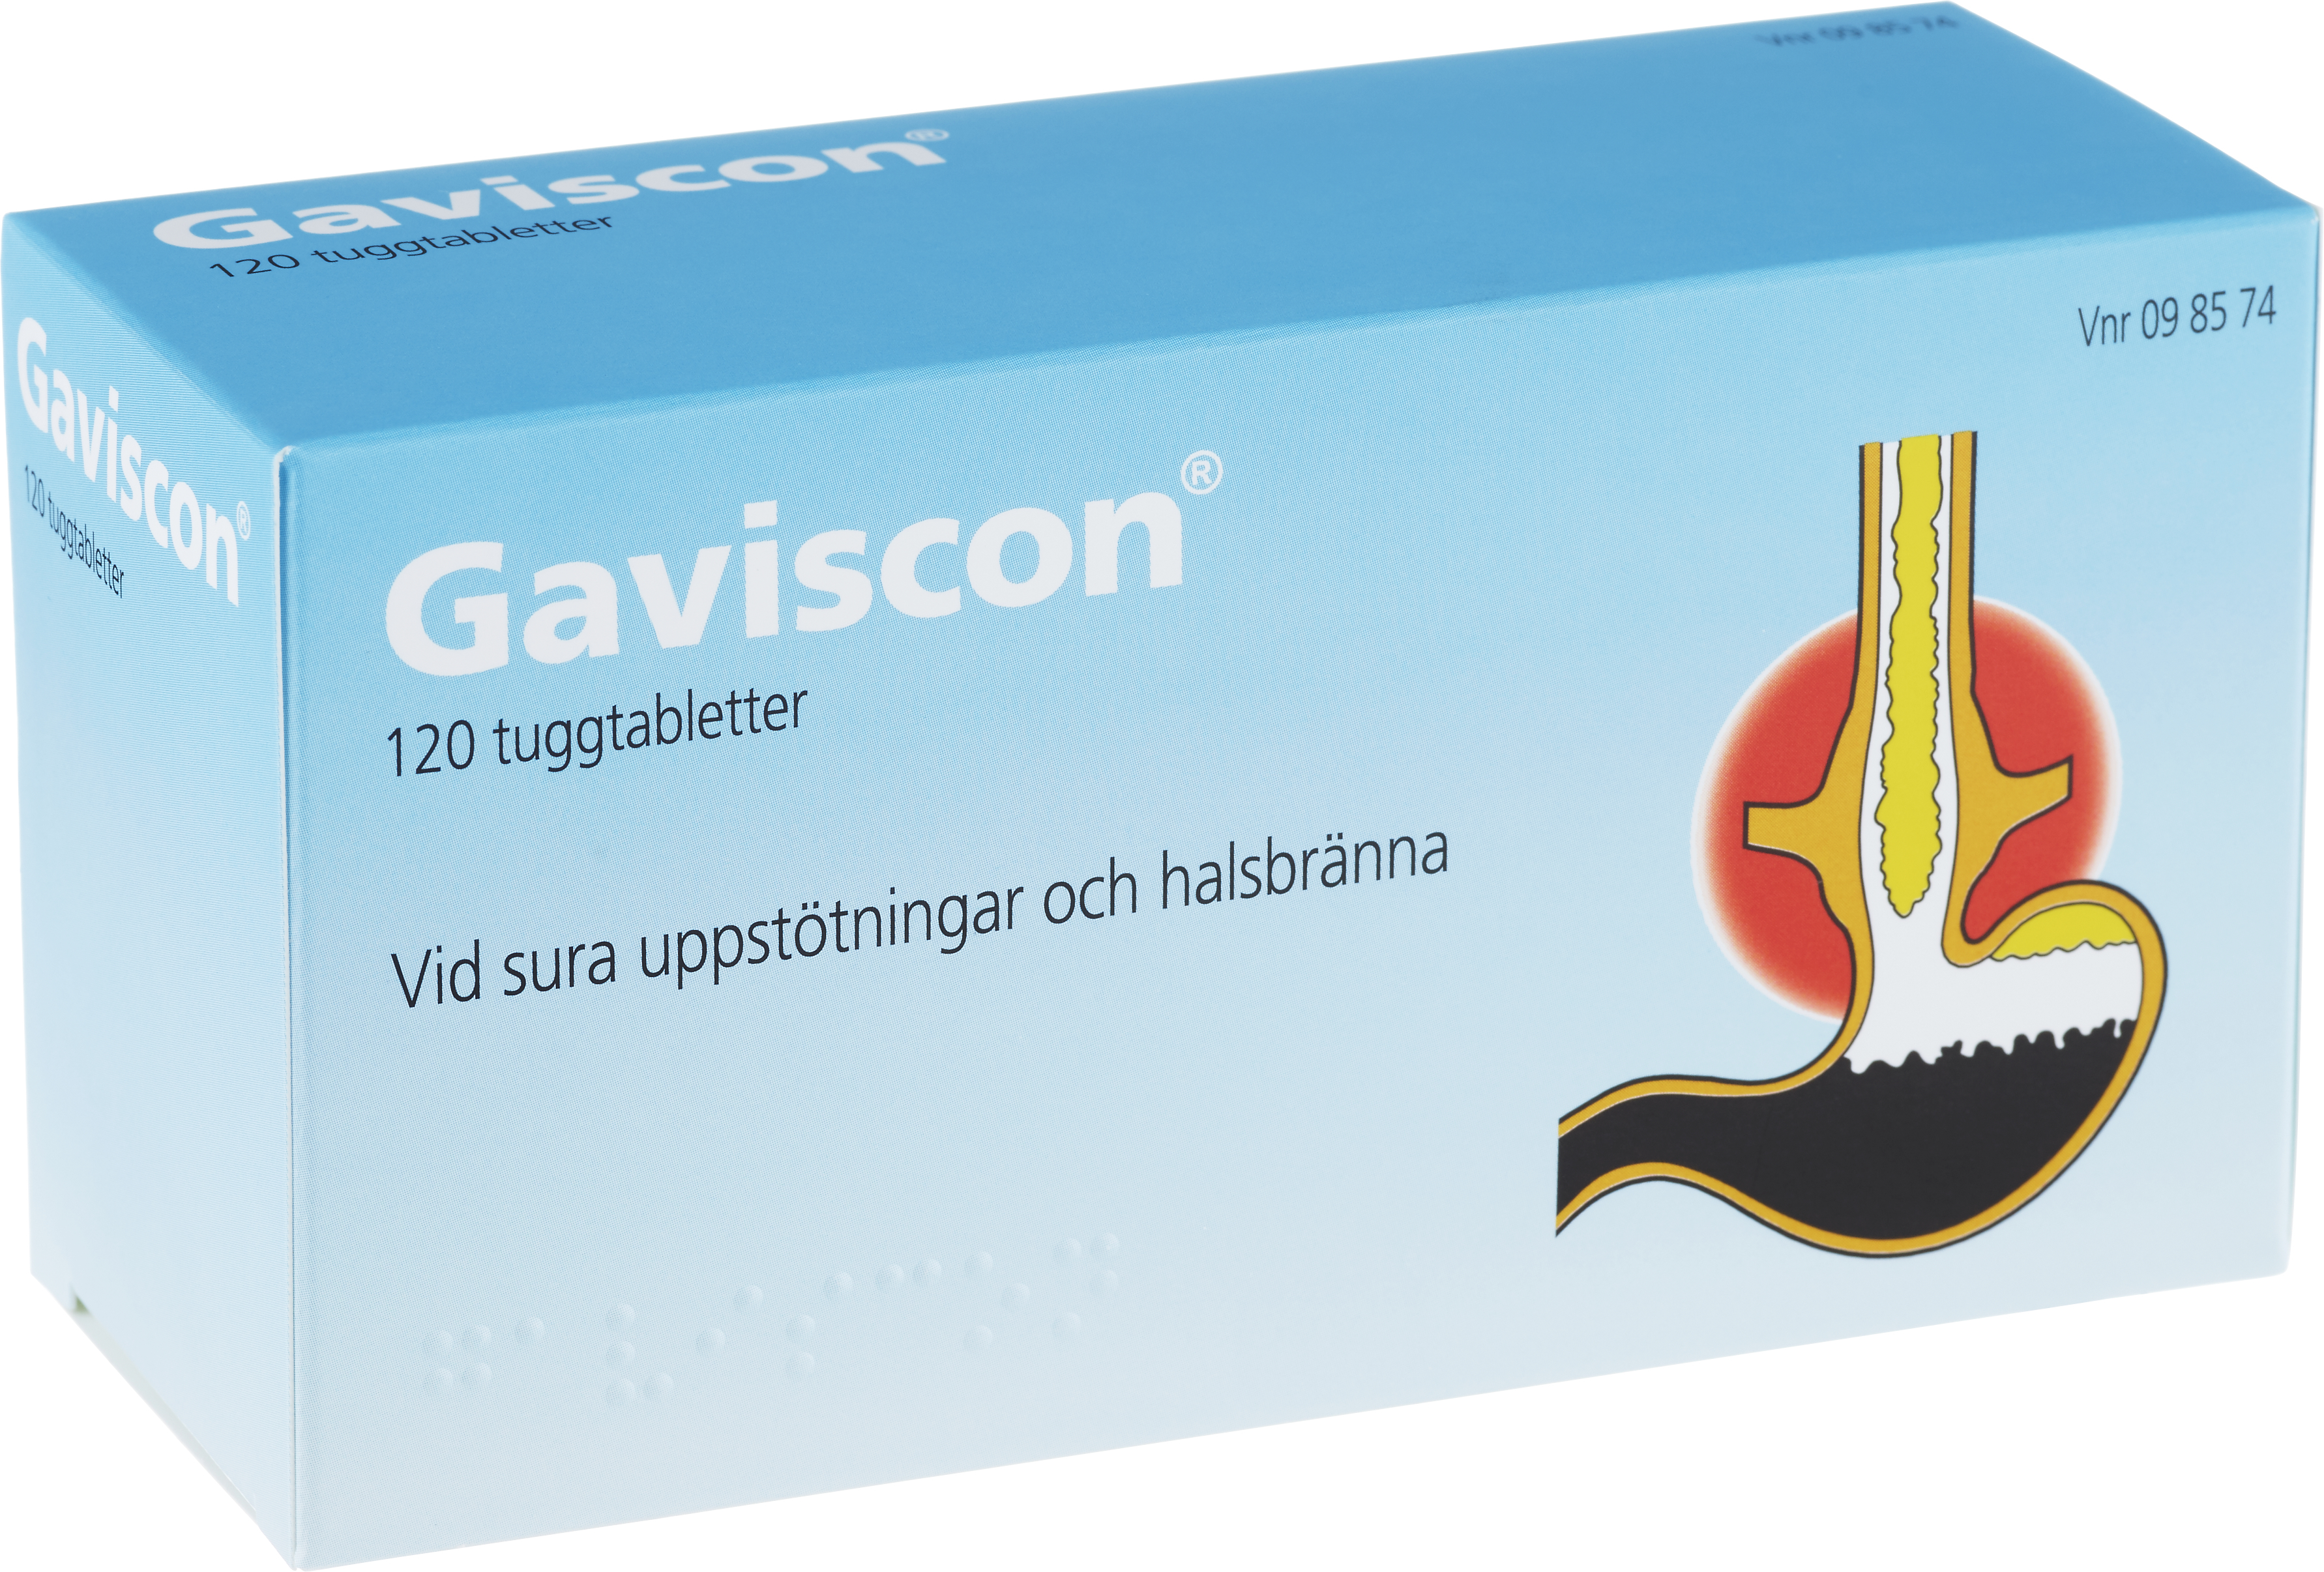 Gaviscon 120 tuggtabletter